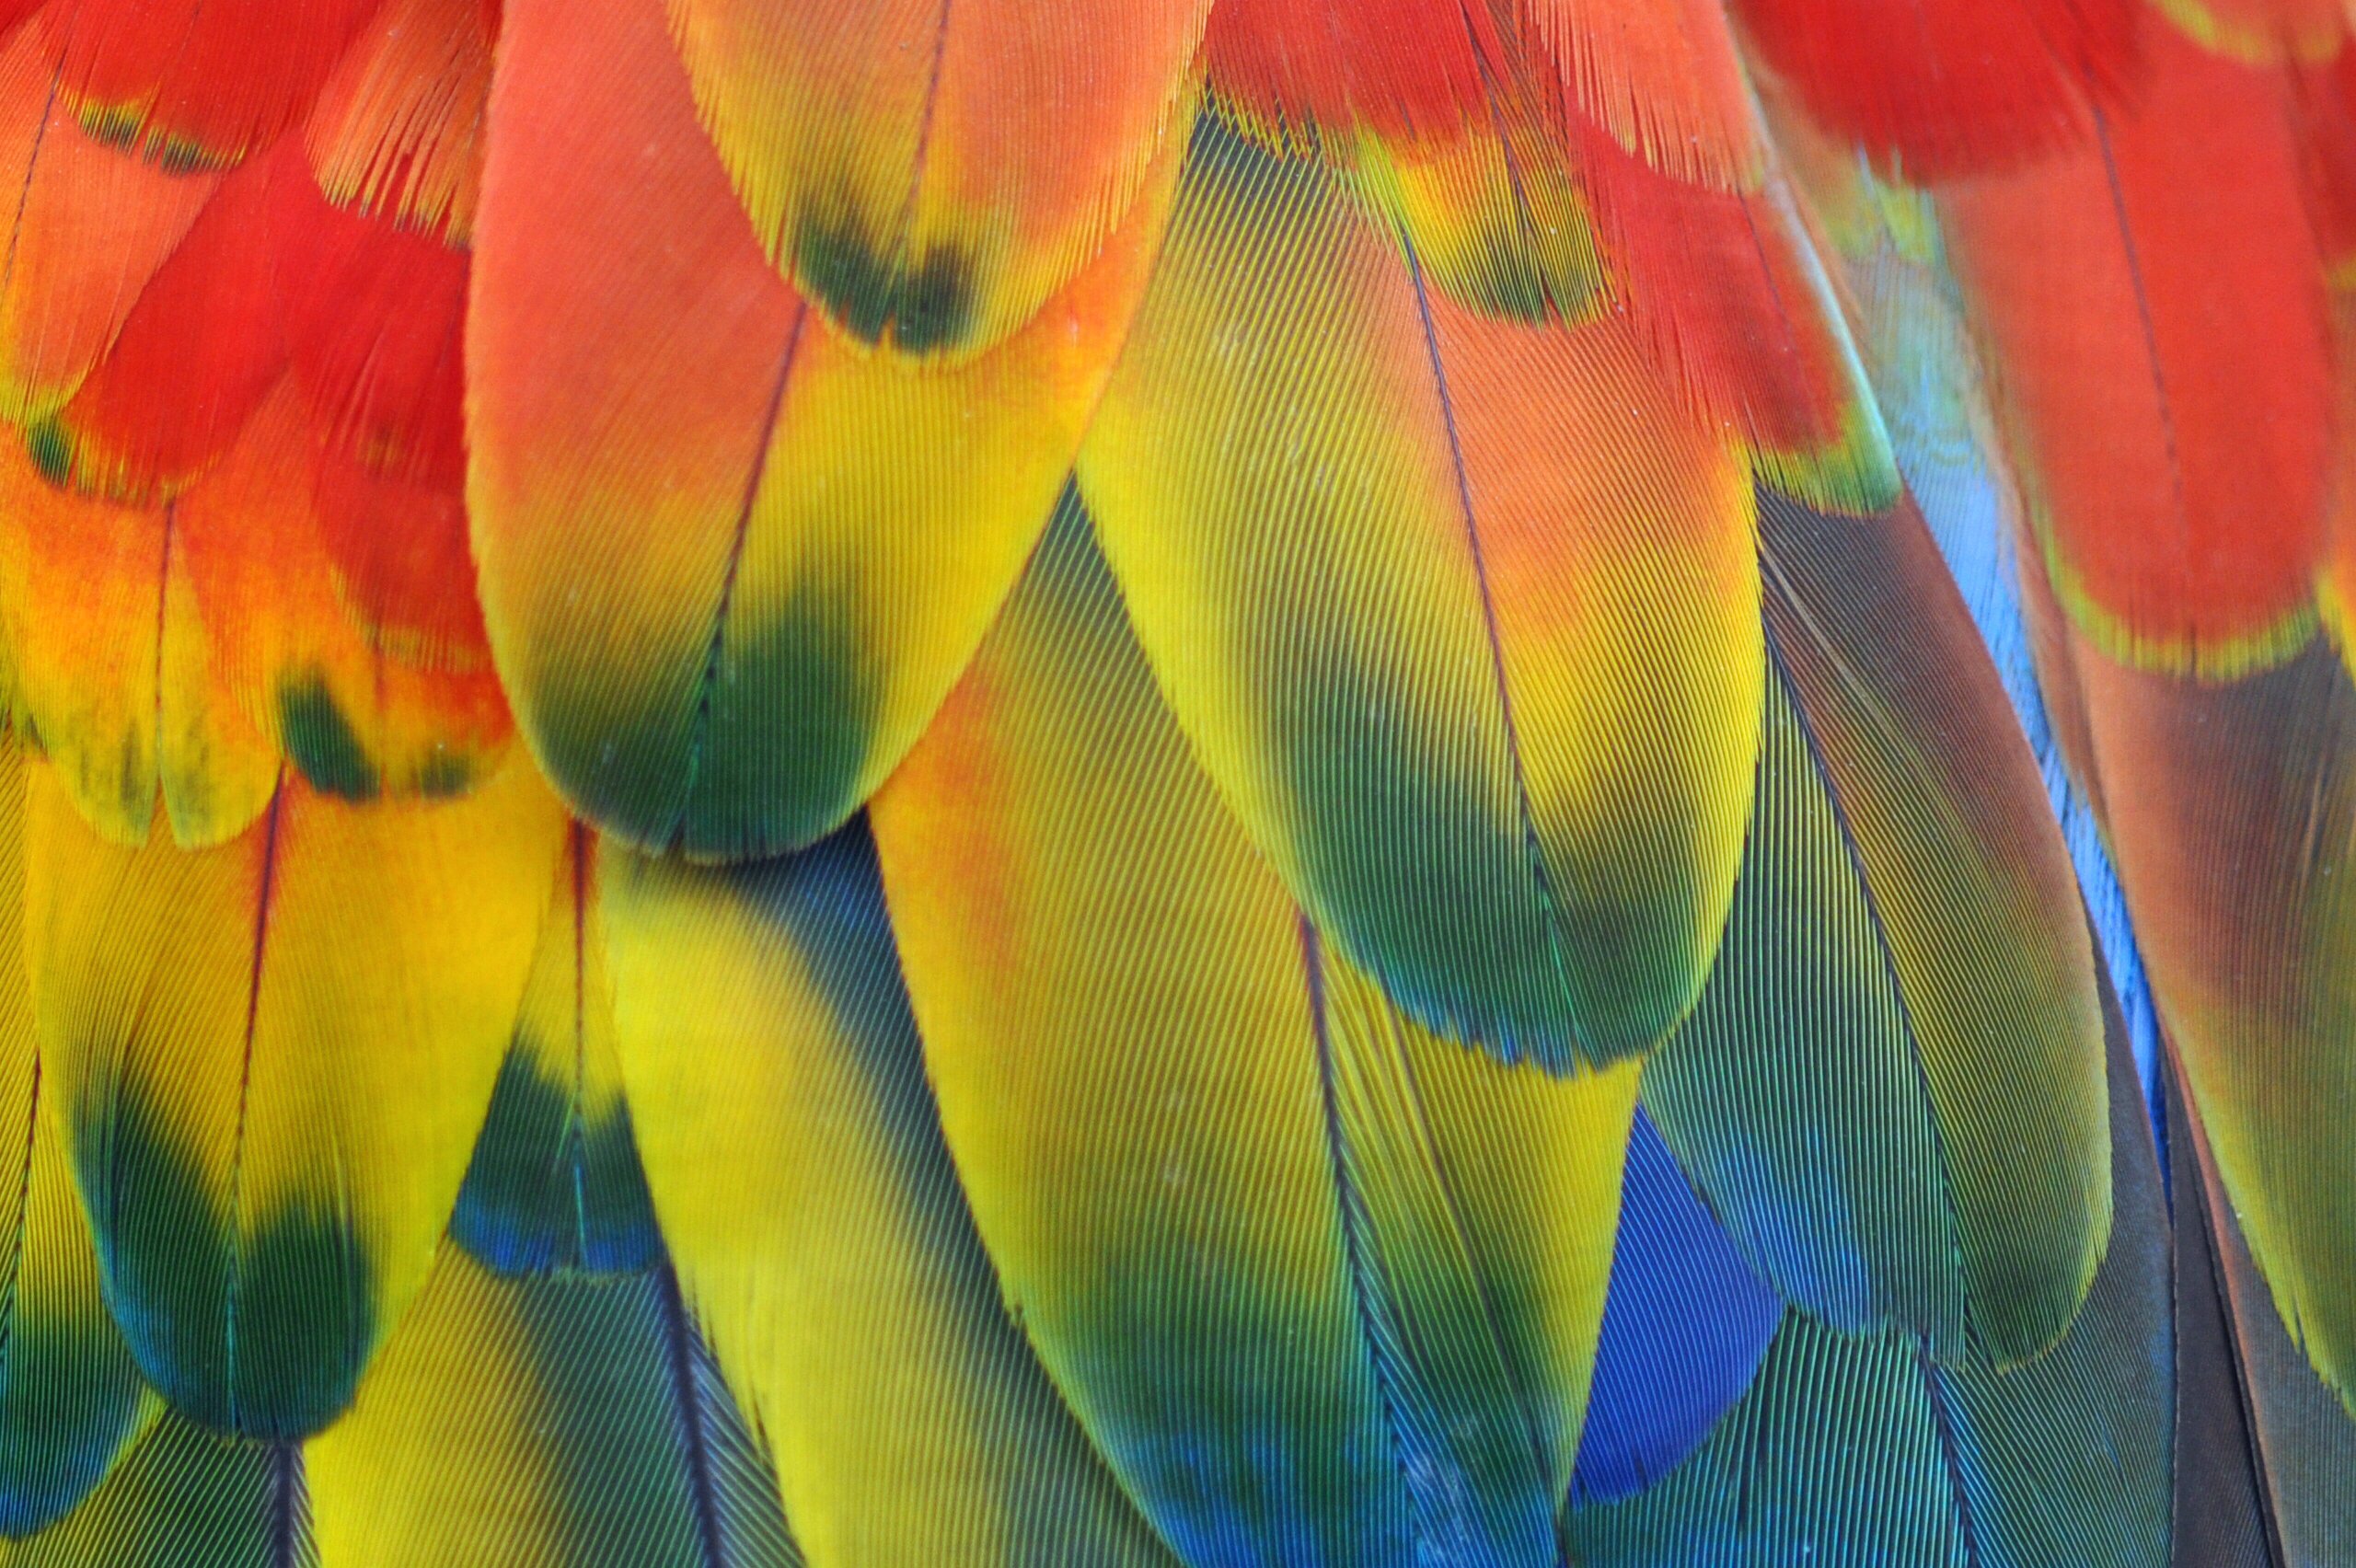 macaw, Parrot, Bird, Tropical,  56 Wallpaper